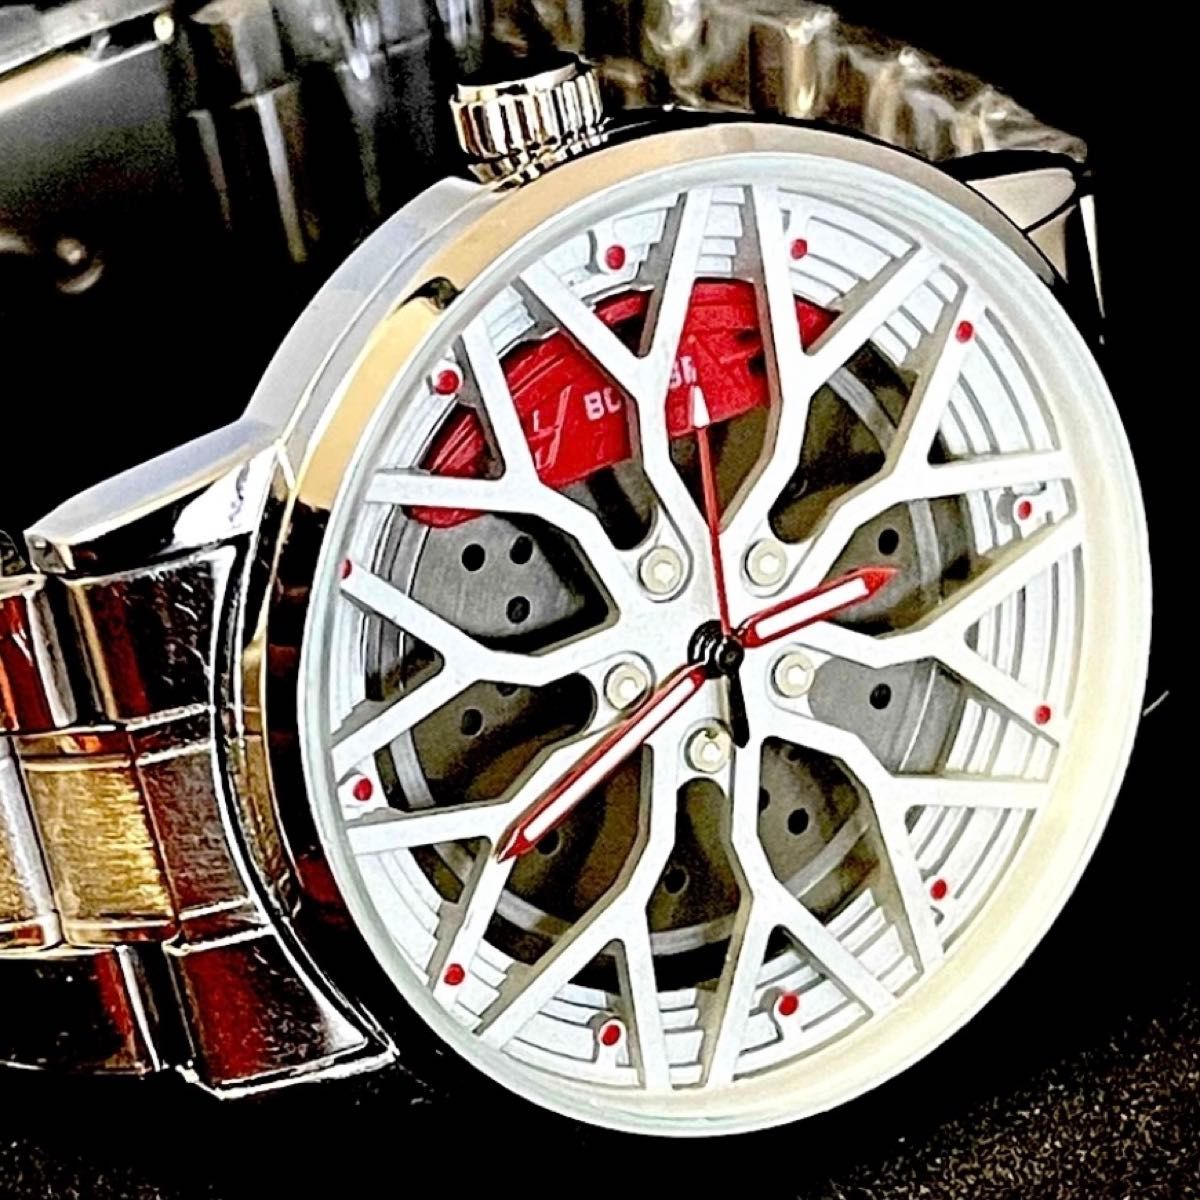 新品 BORUSE グレーホイールオマージュウォッチ シルバー&グレーホイール レッドキャリパー メンズ腕時計